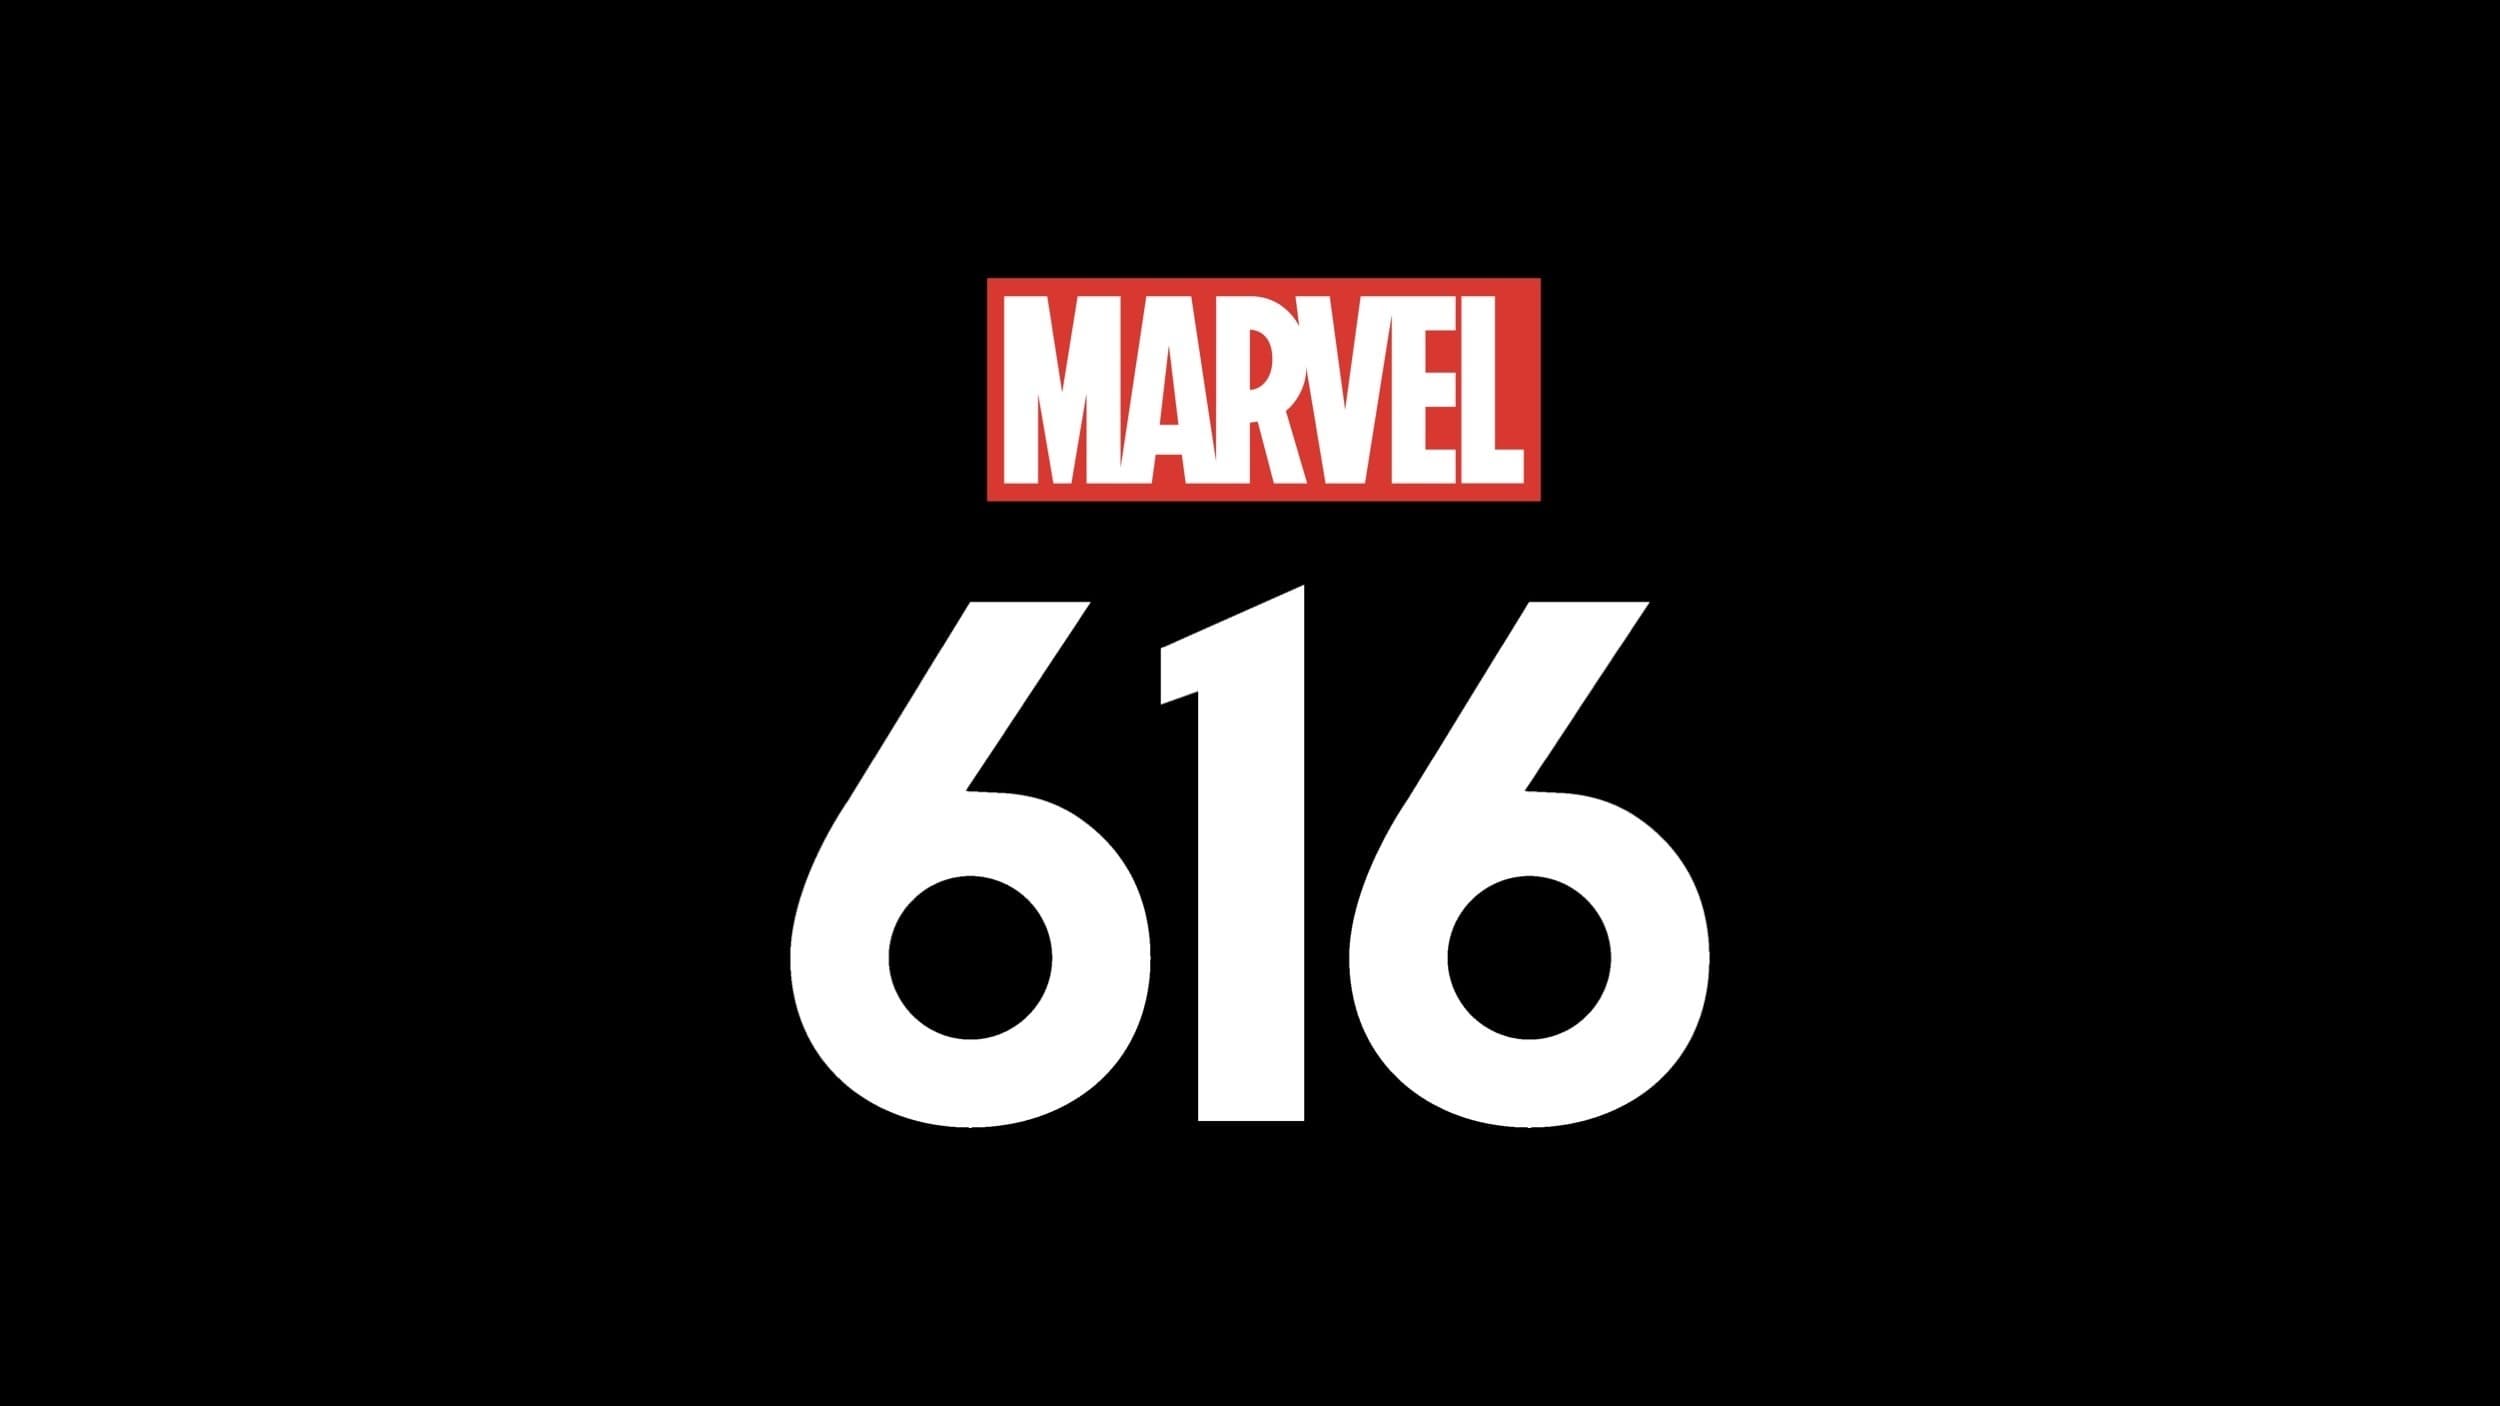 Marvel’s 616